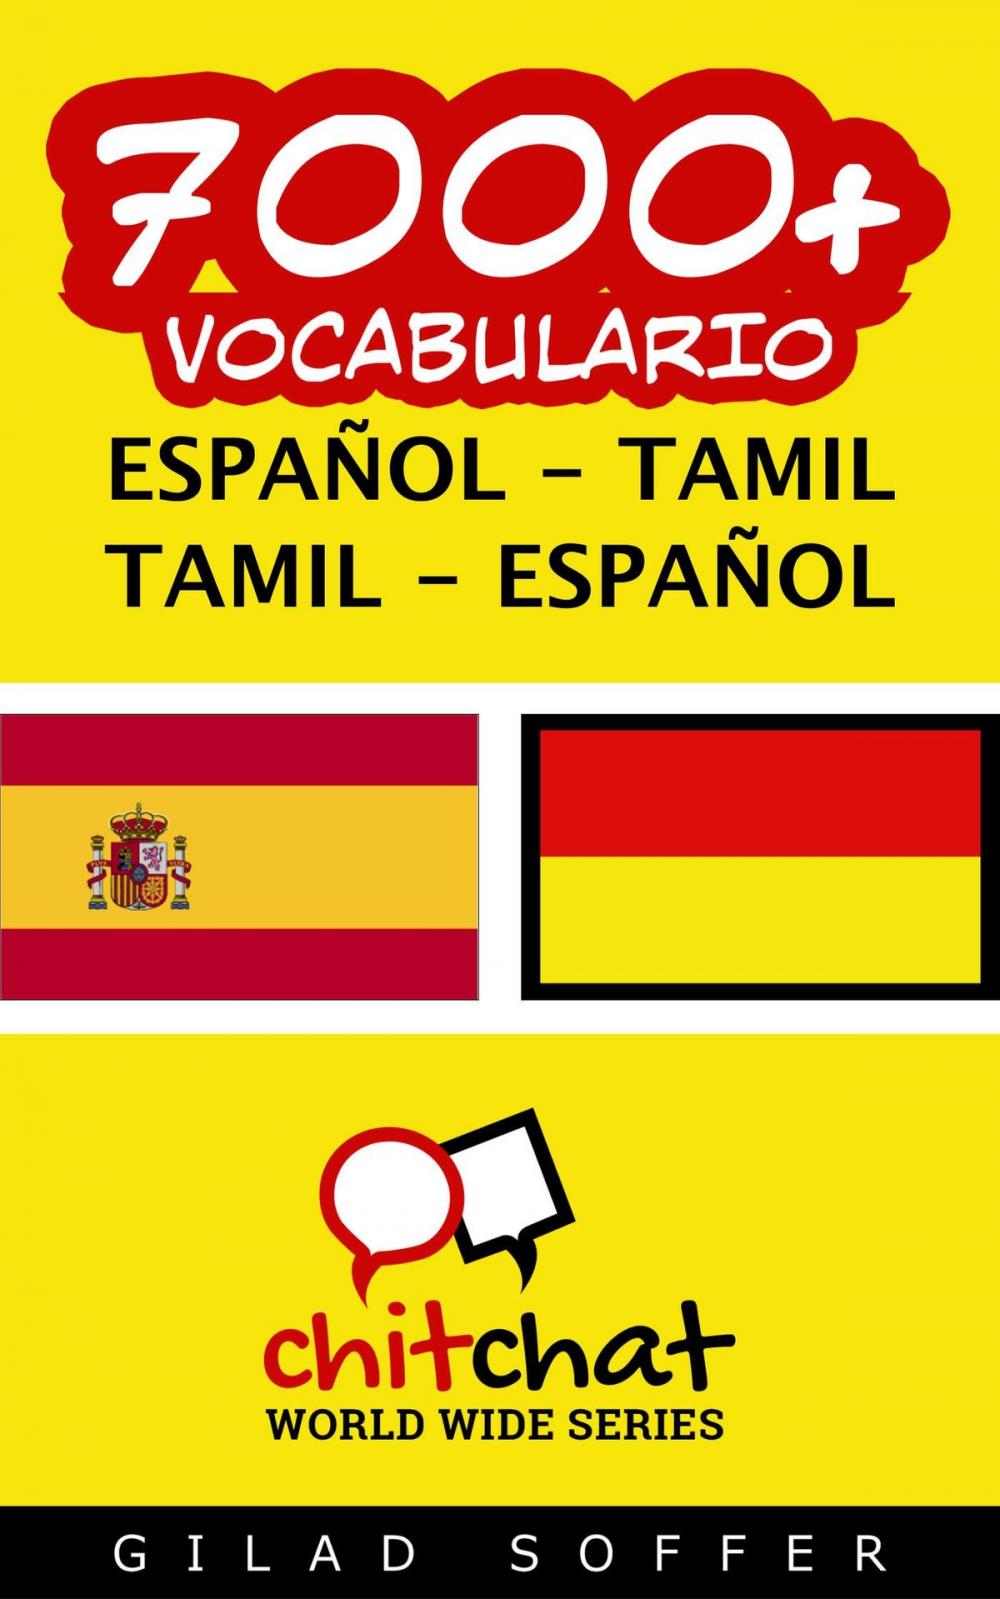 Big bigCover of 7000+ vocabulario español - Tamil